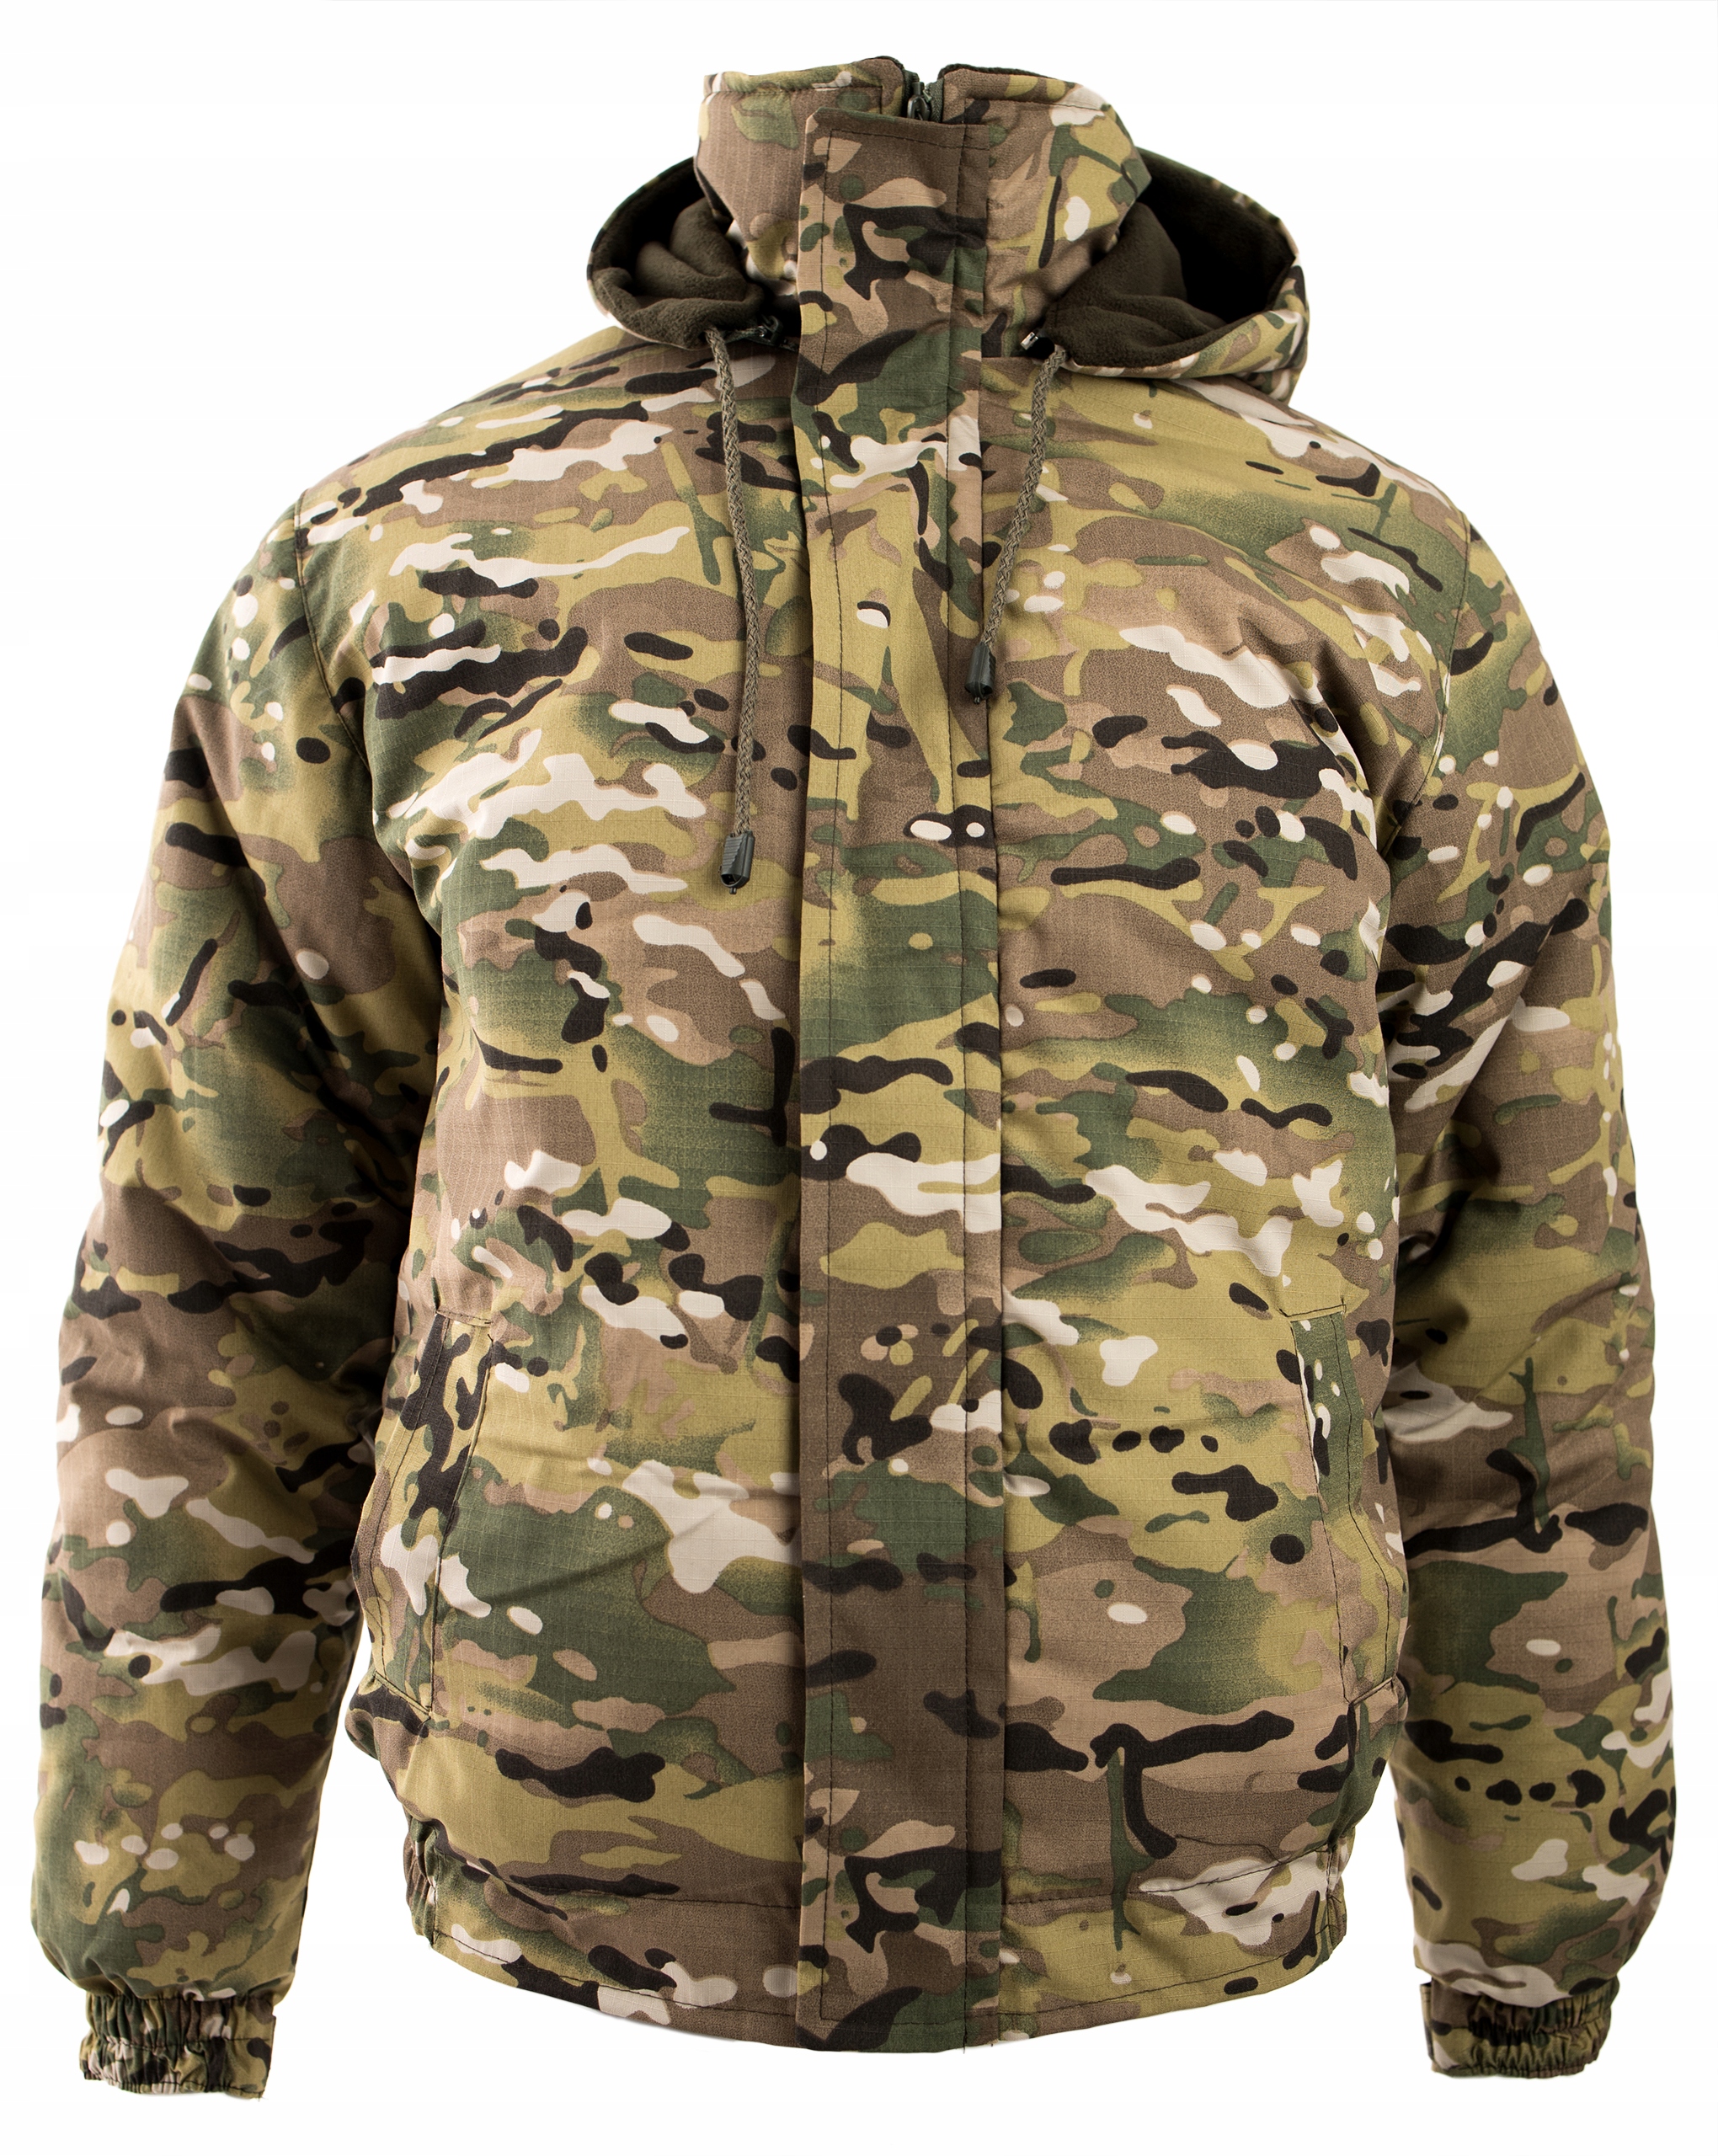 Військова зимова куртка ізольована Multicam roz. М Інший бренд